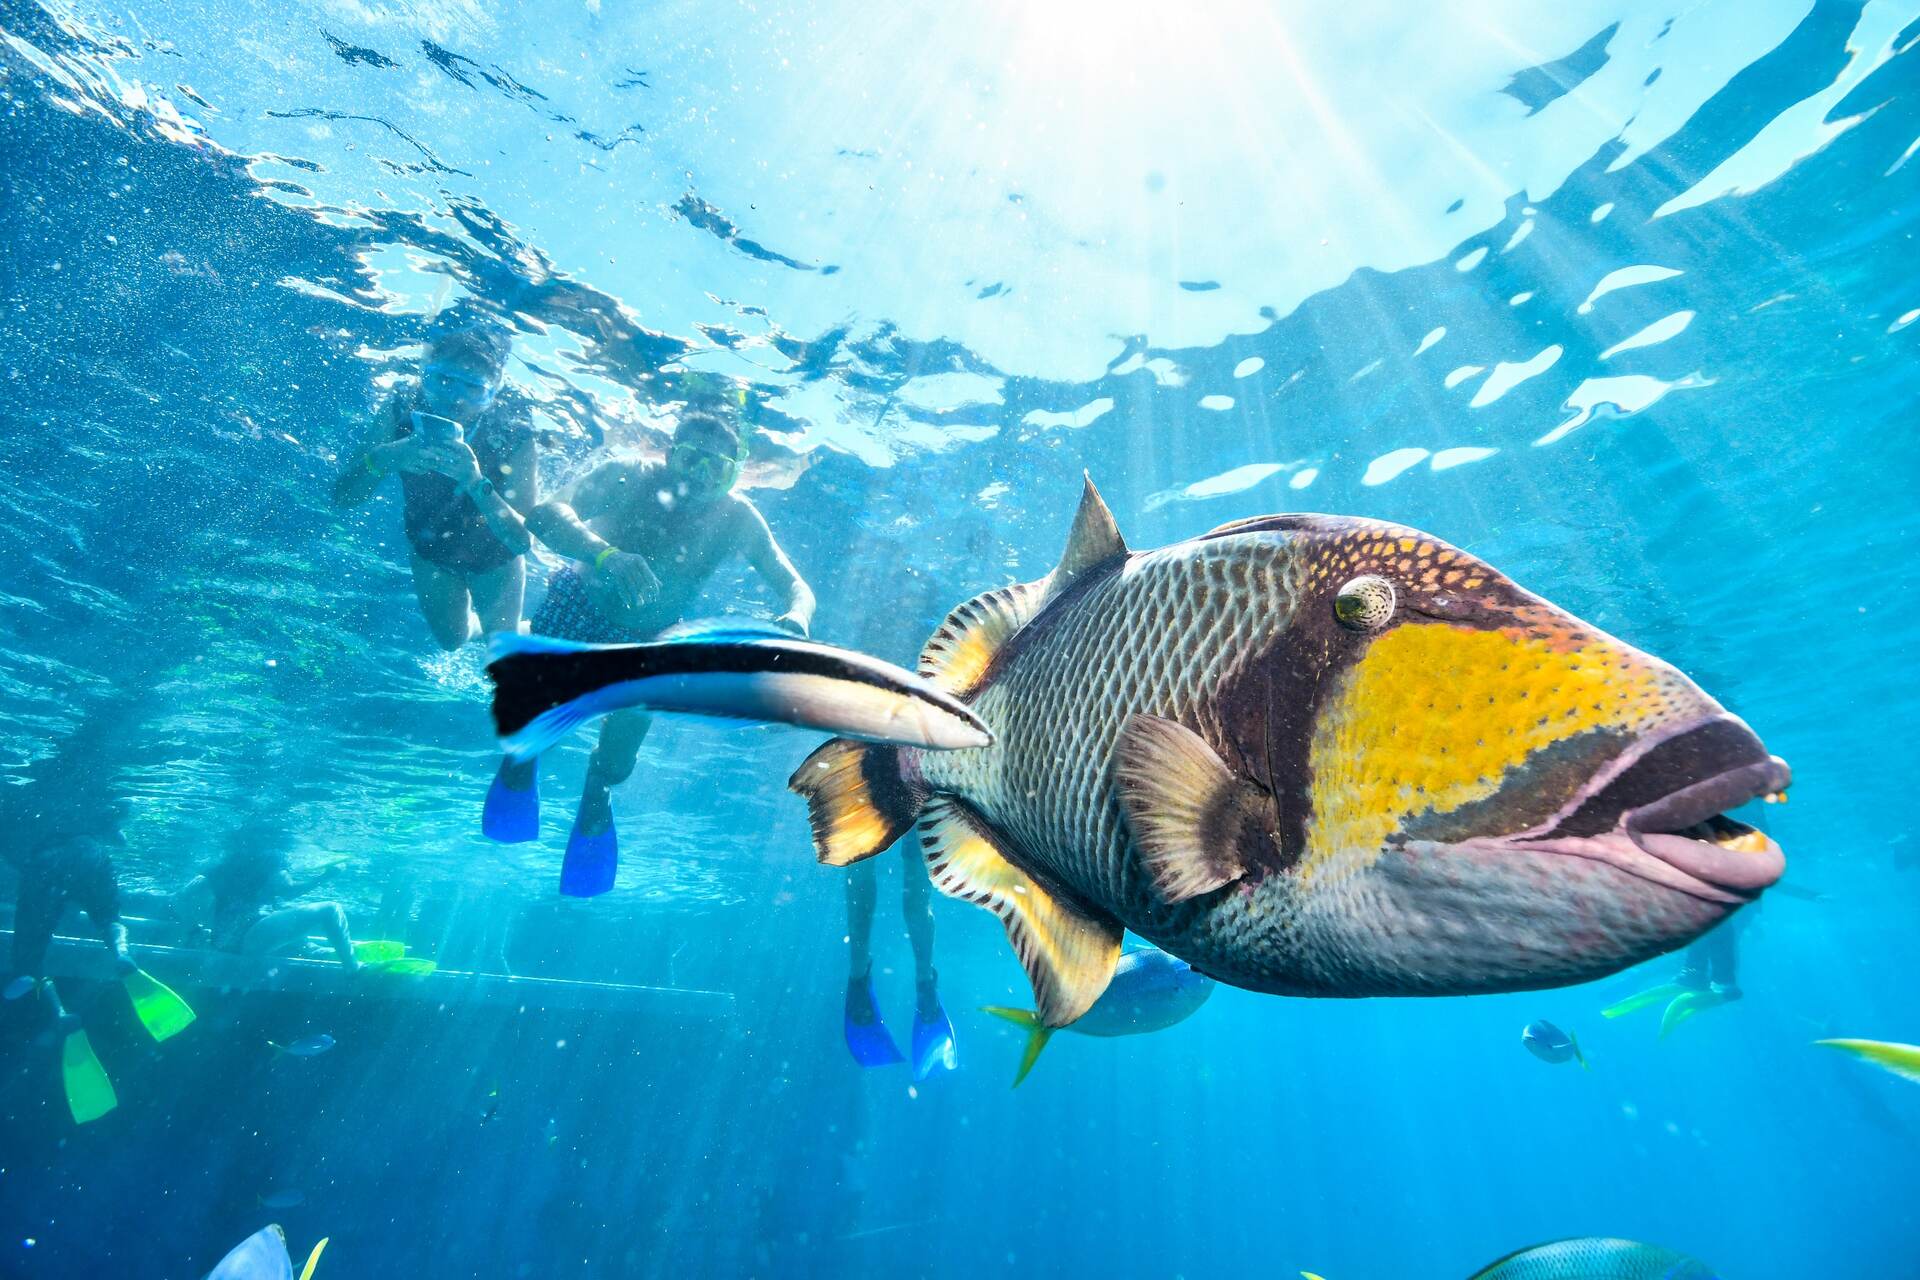 Muscoli artificiali: i movimento di un pesce sott'acqua è uno dei più complessi da riprodurre